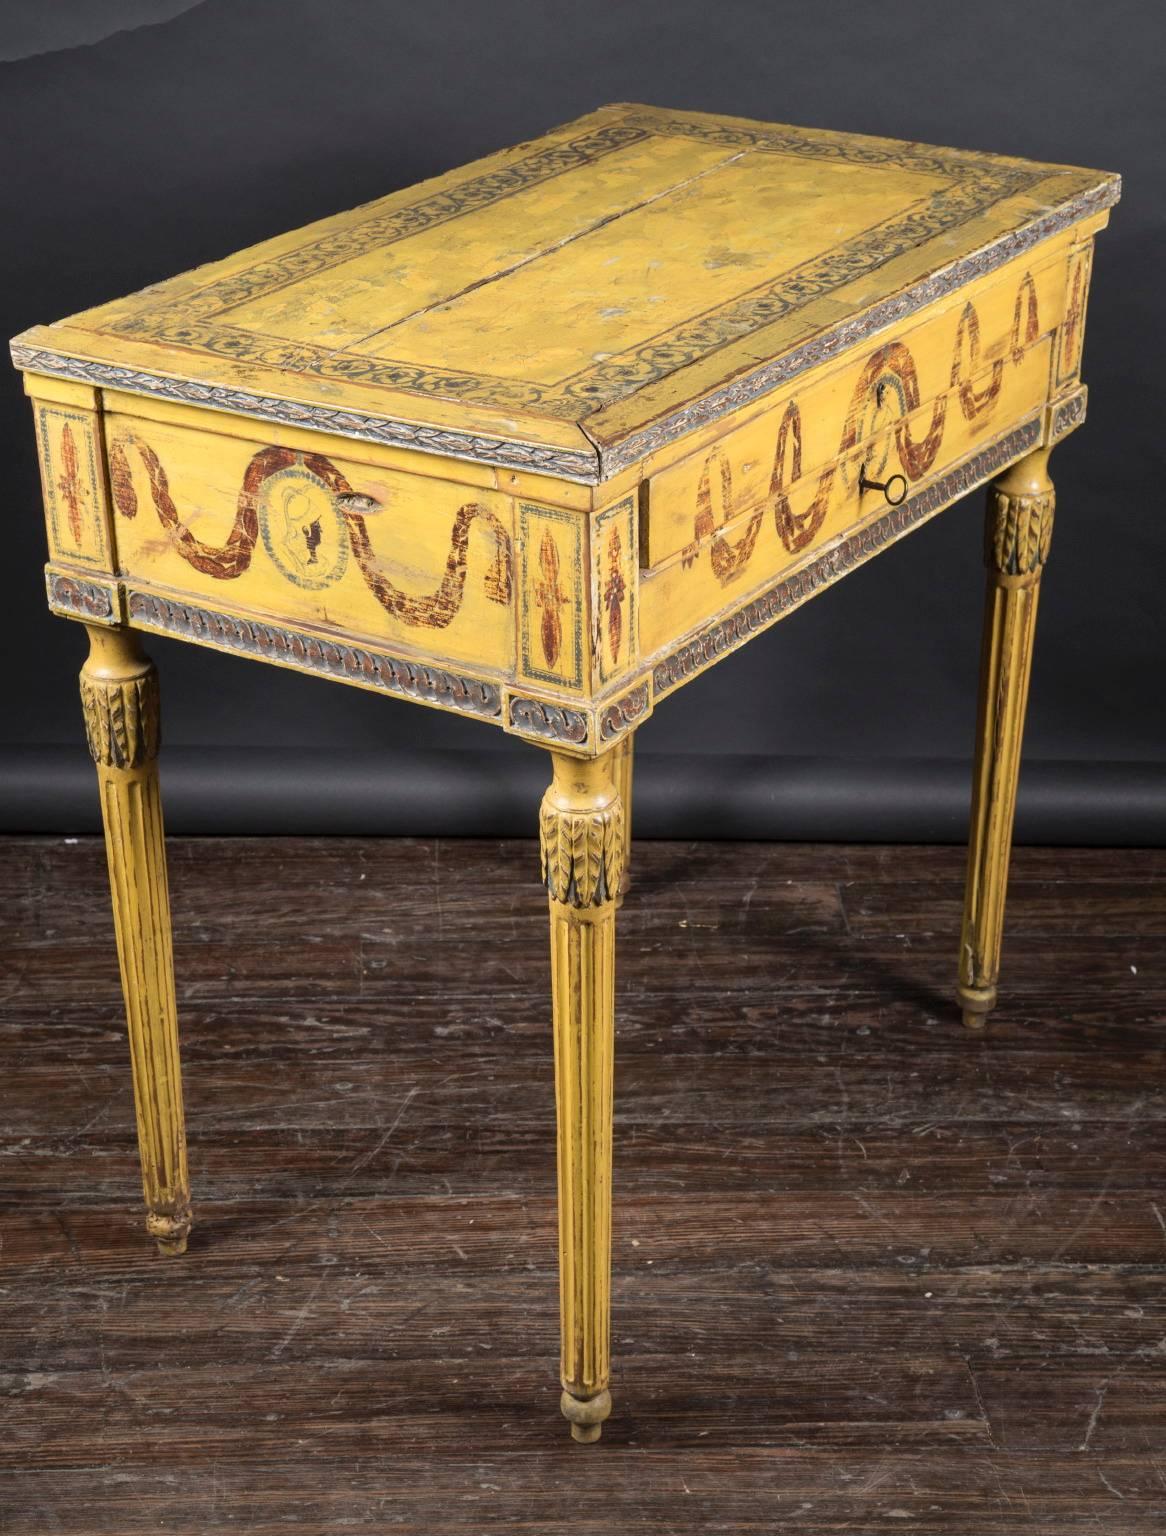 Cette table classique et simple de style Louis XVI, peinte à la main et dotée de deux tiroirs centraux, date du 18e siècle. La pièce antique française présente des détails autour du tablier, en haut et en bas, et repose sur de longs pieds cannelés